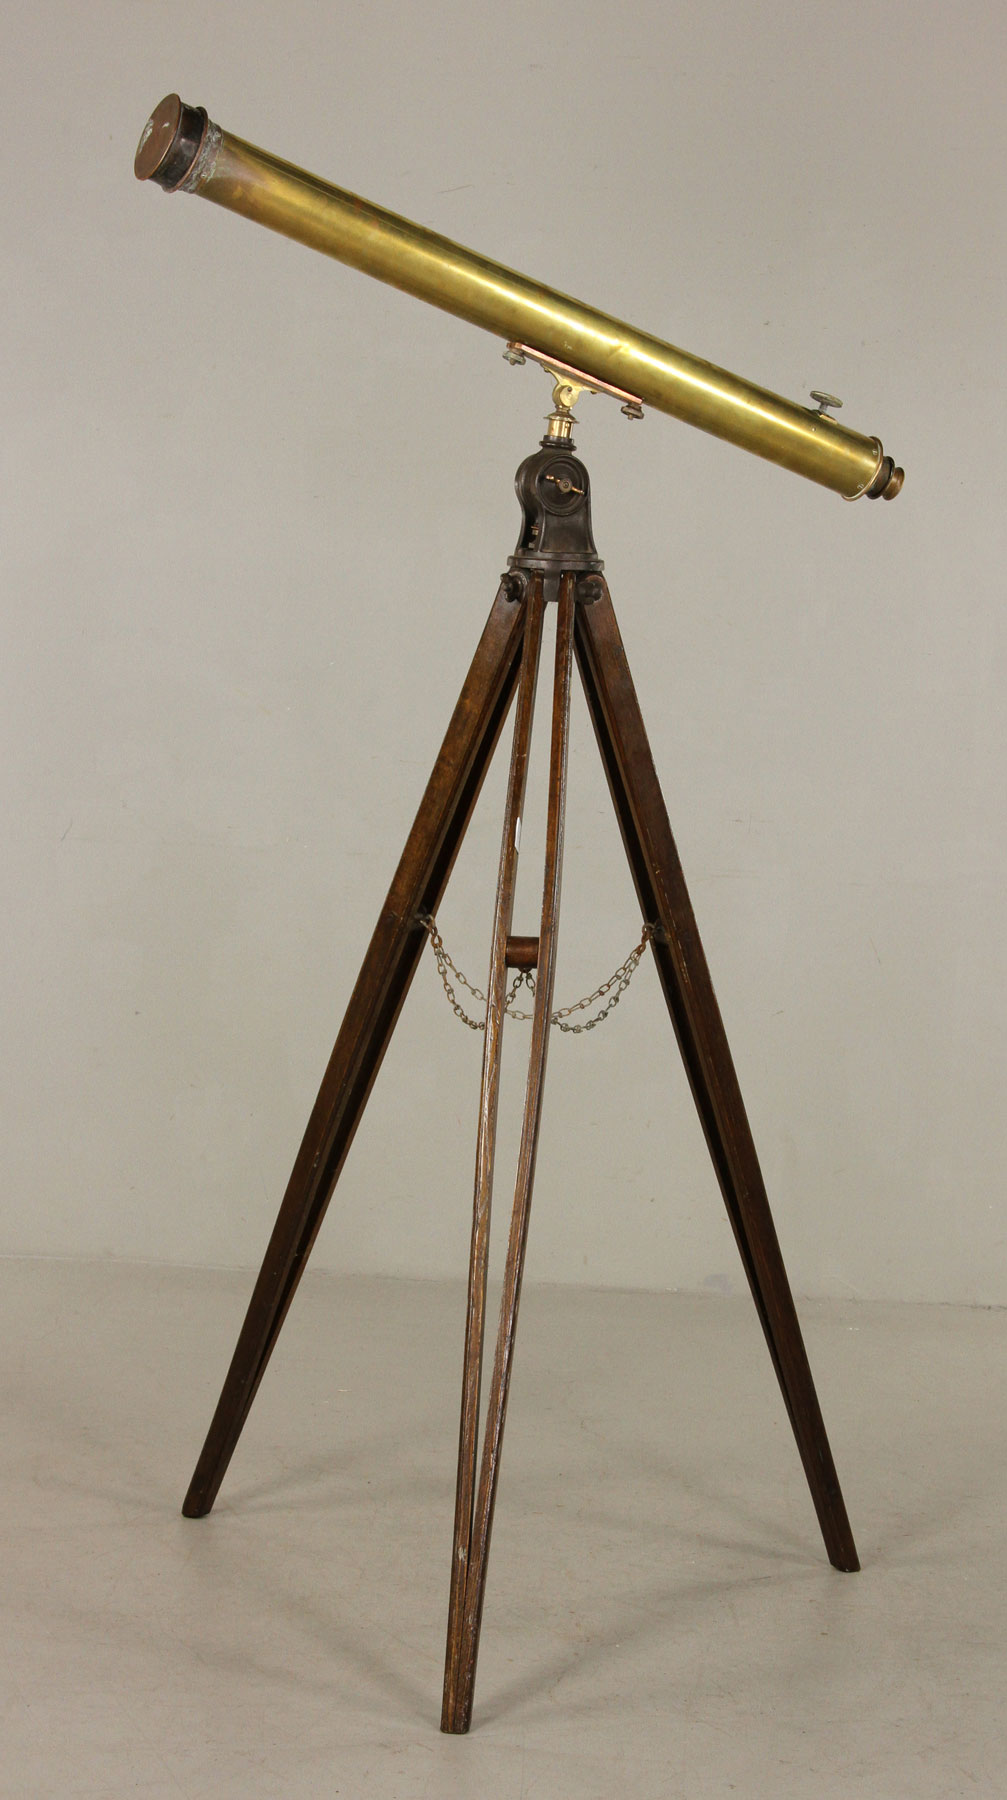 Alvan Clark & Sons Brass Telescope